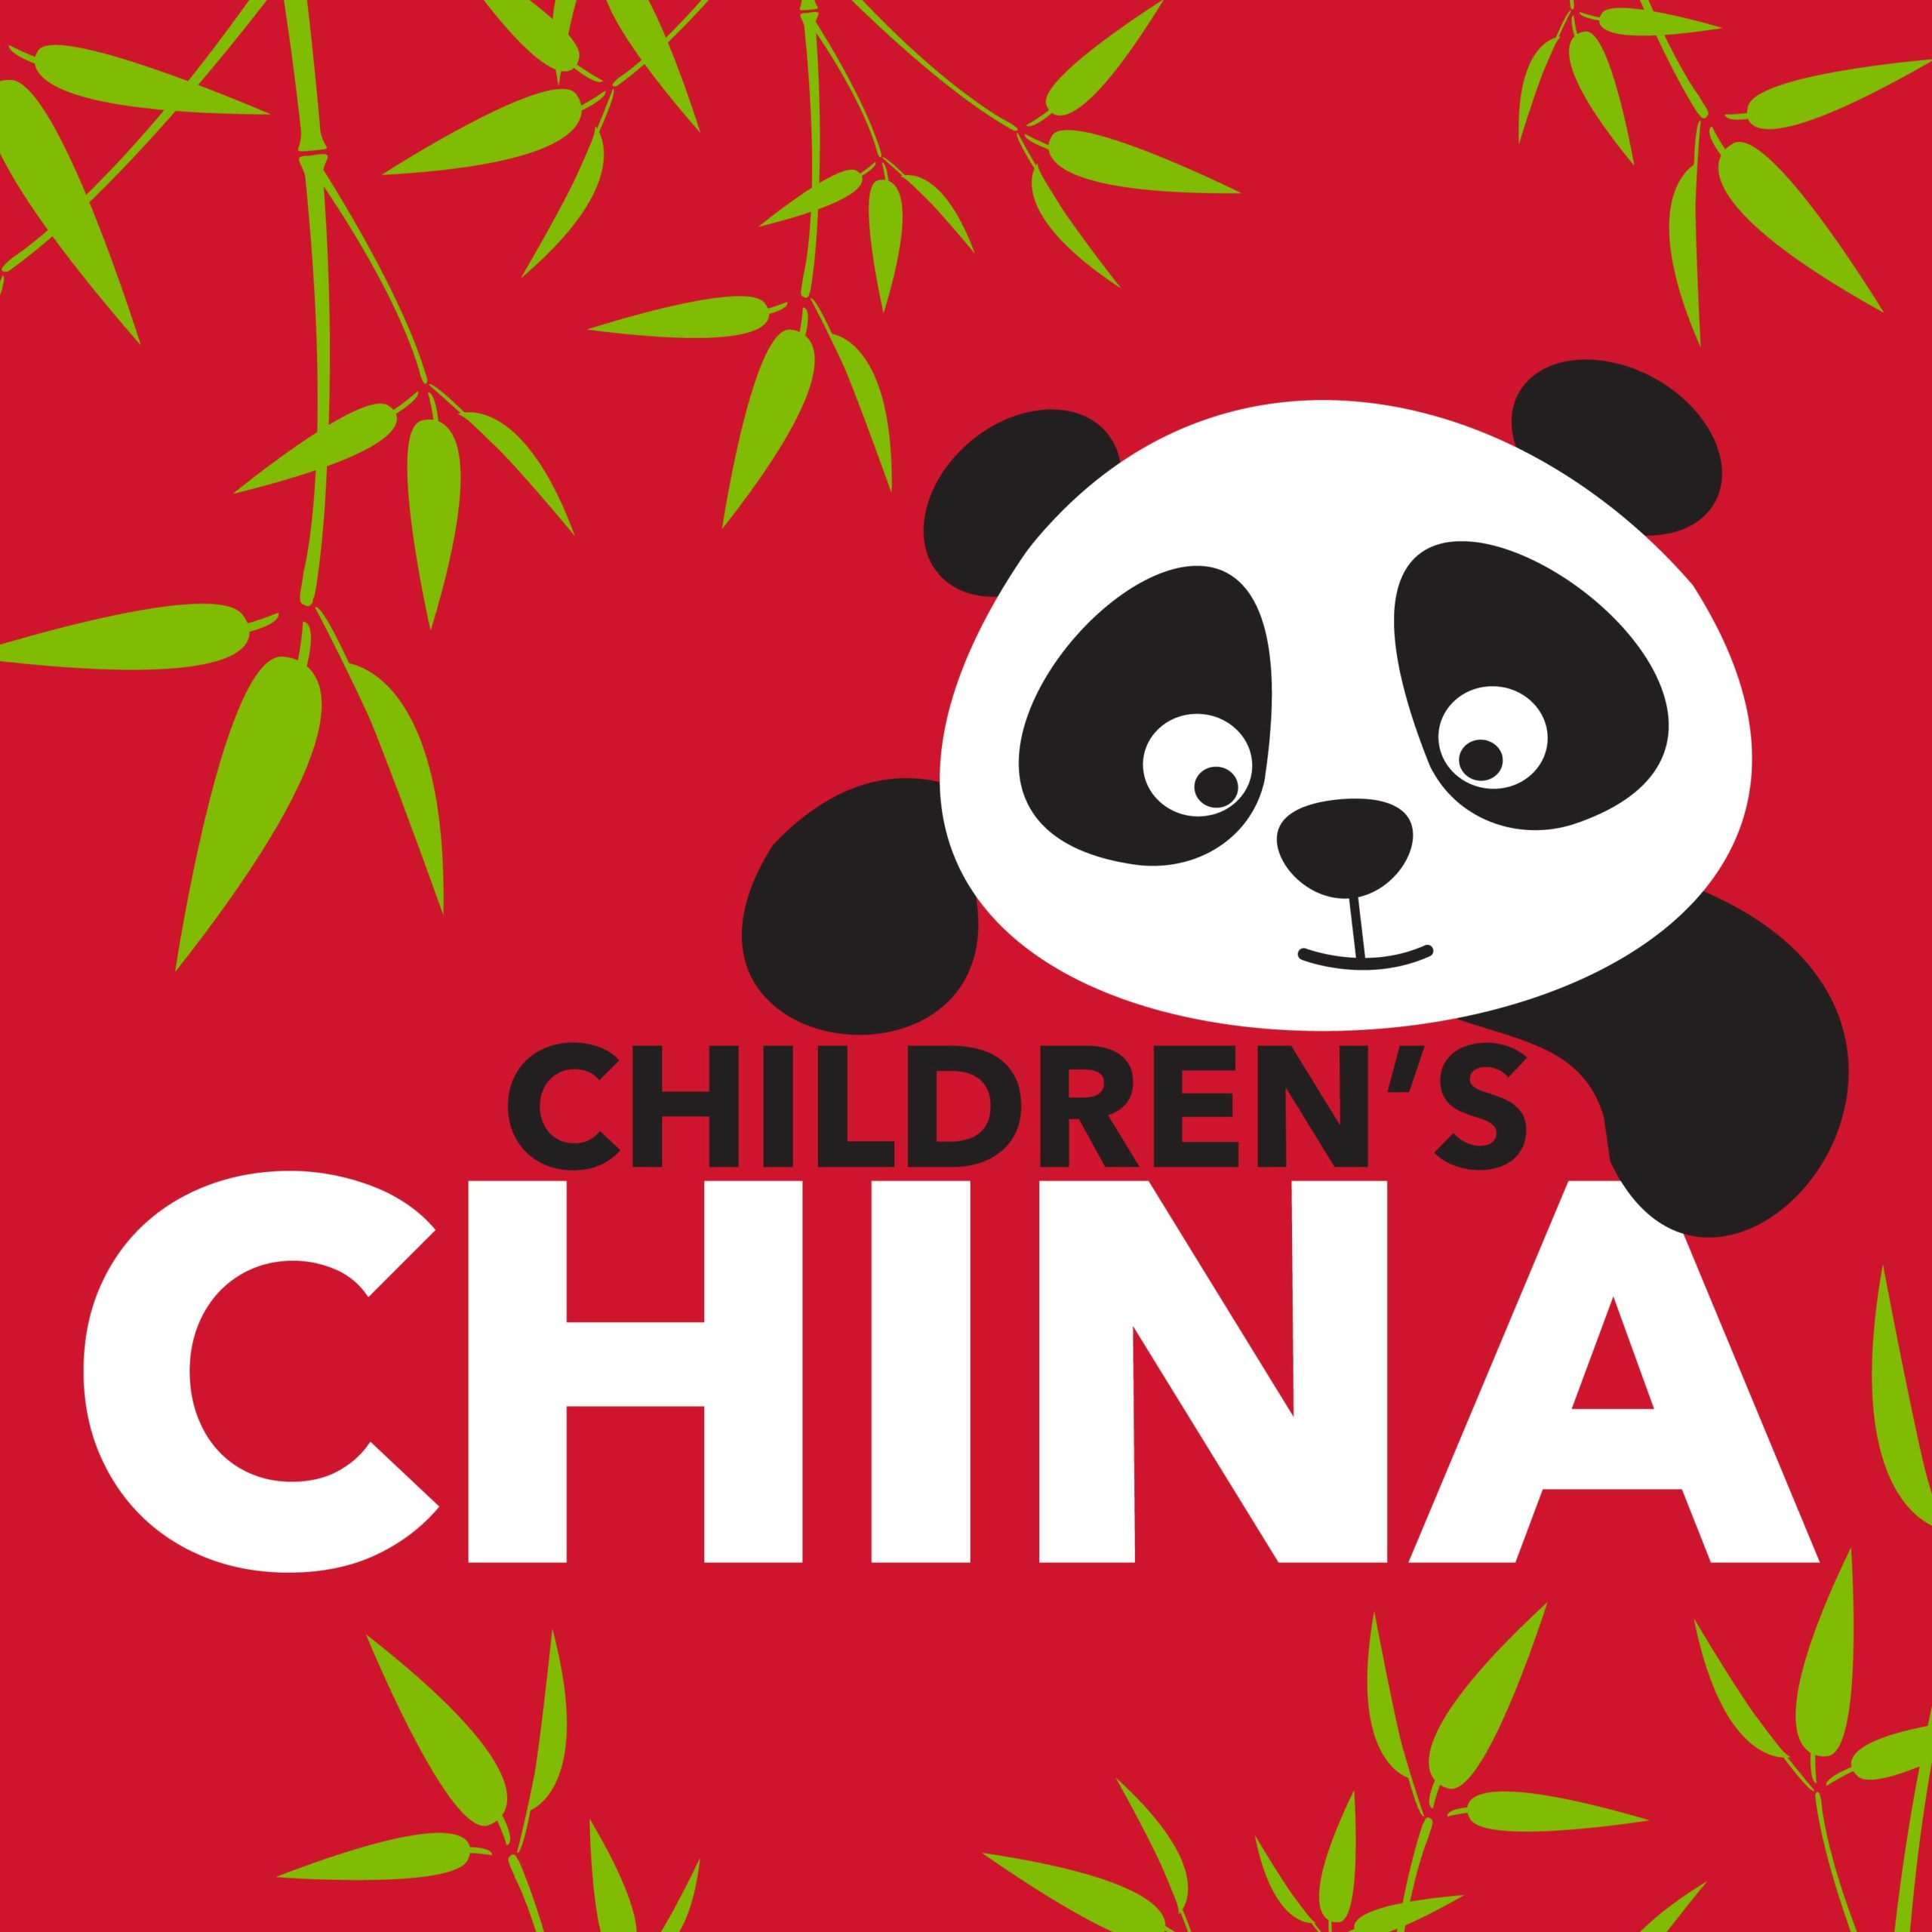 Children’s China